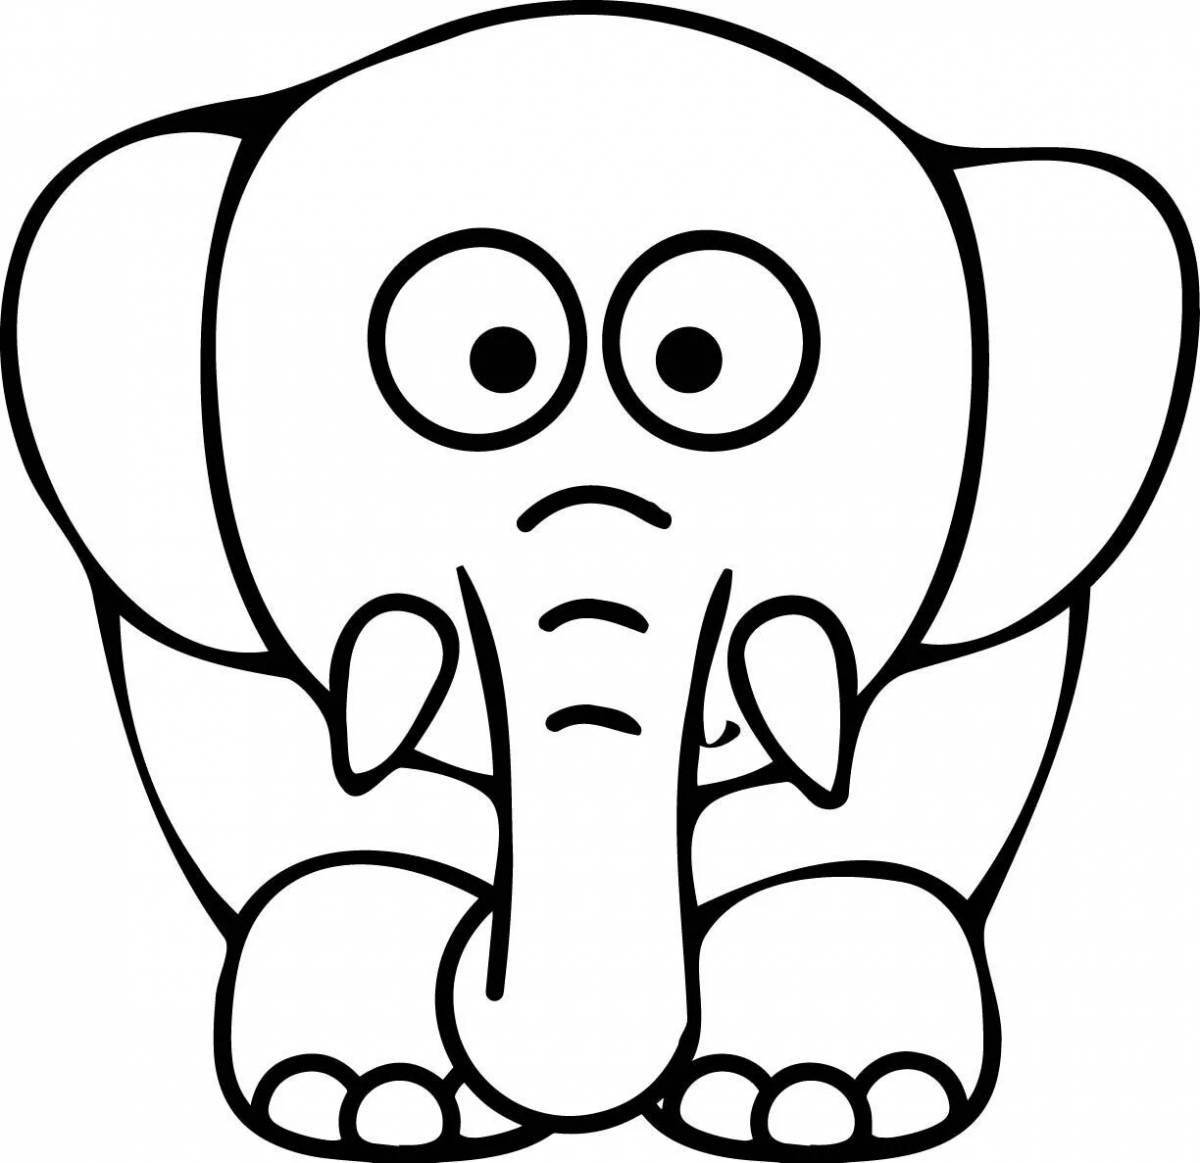 Увлекательный рисунок слона